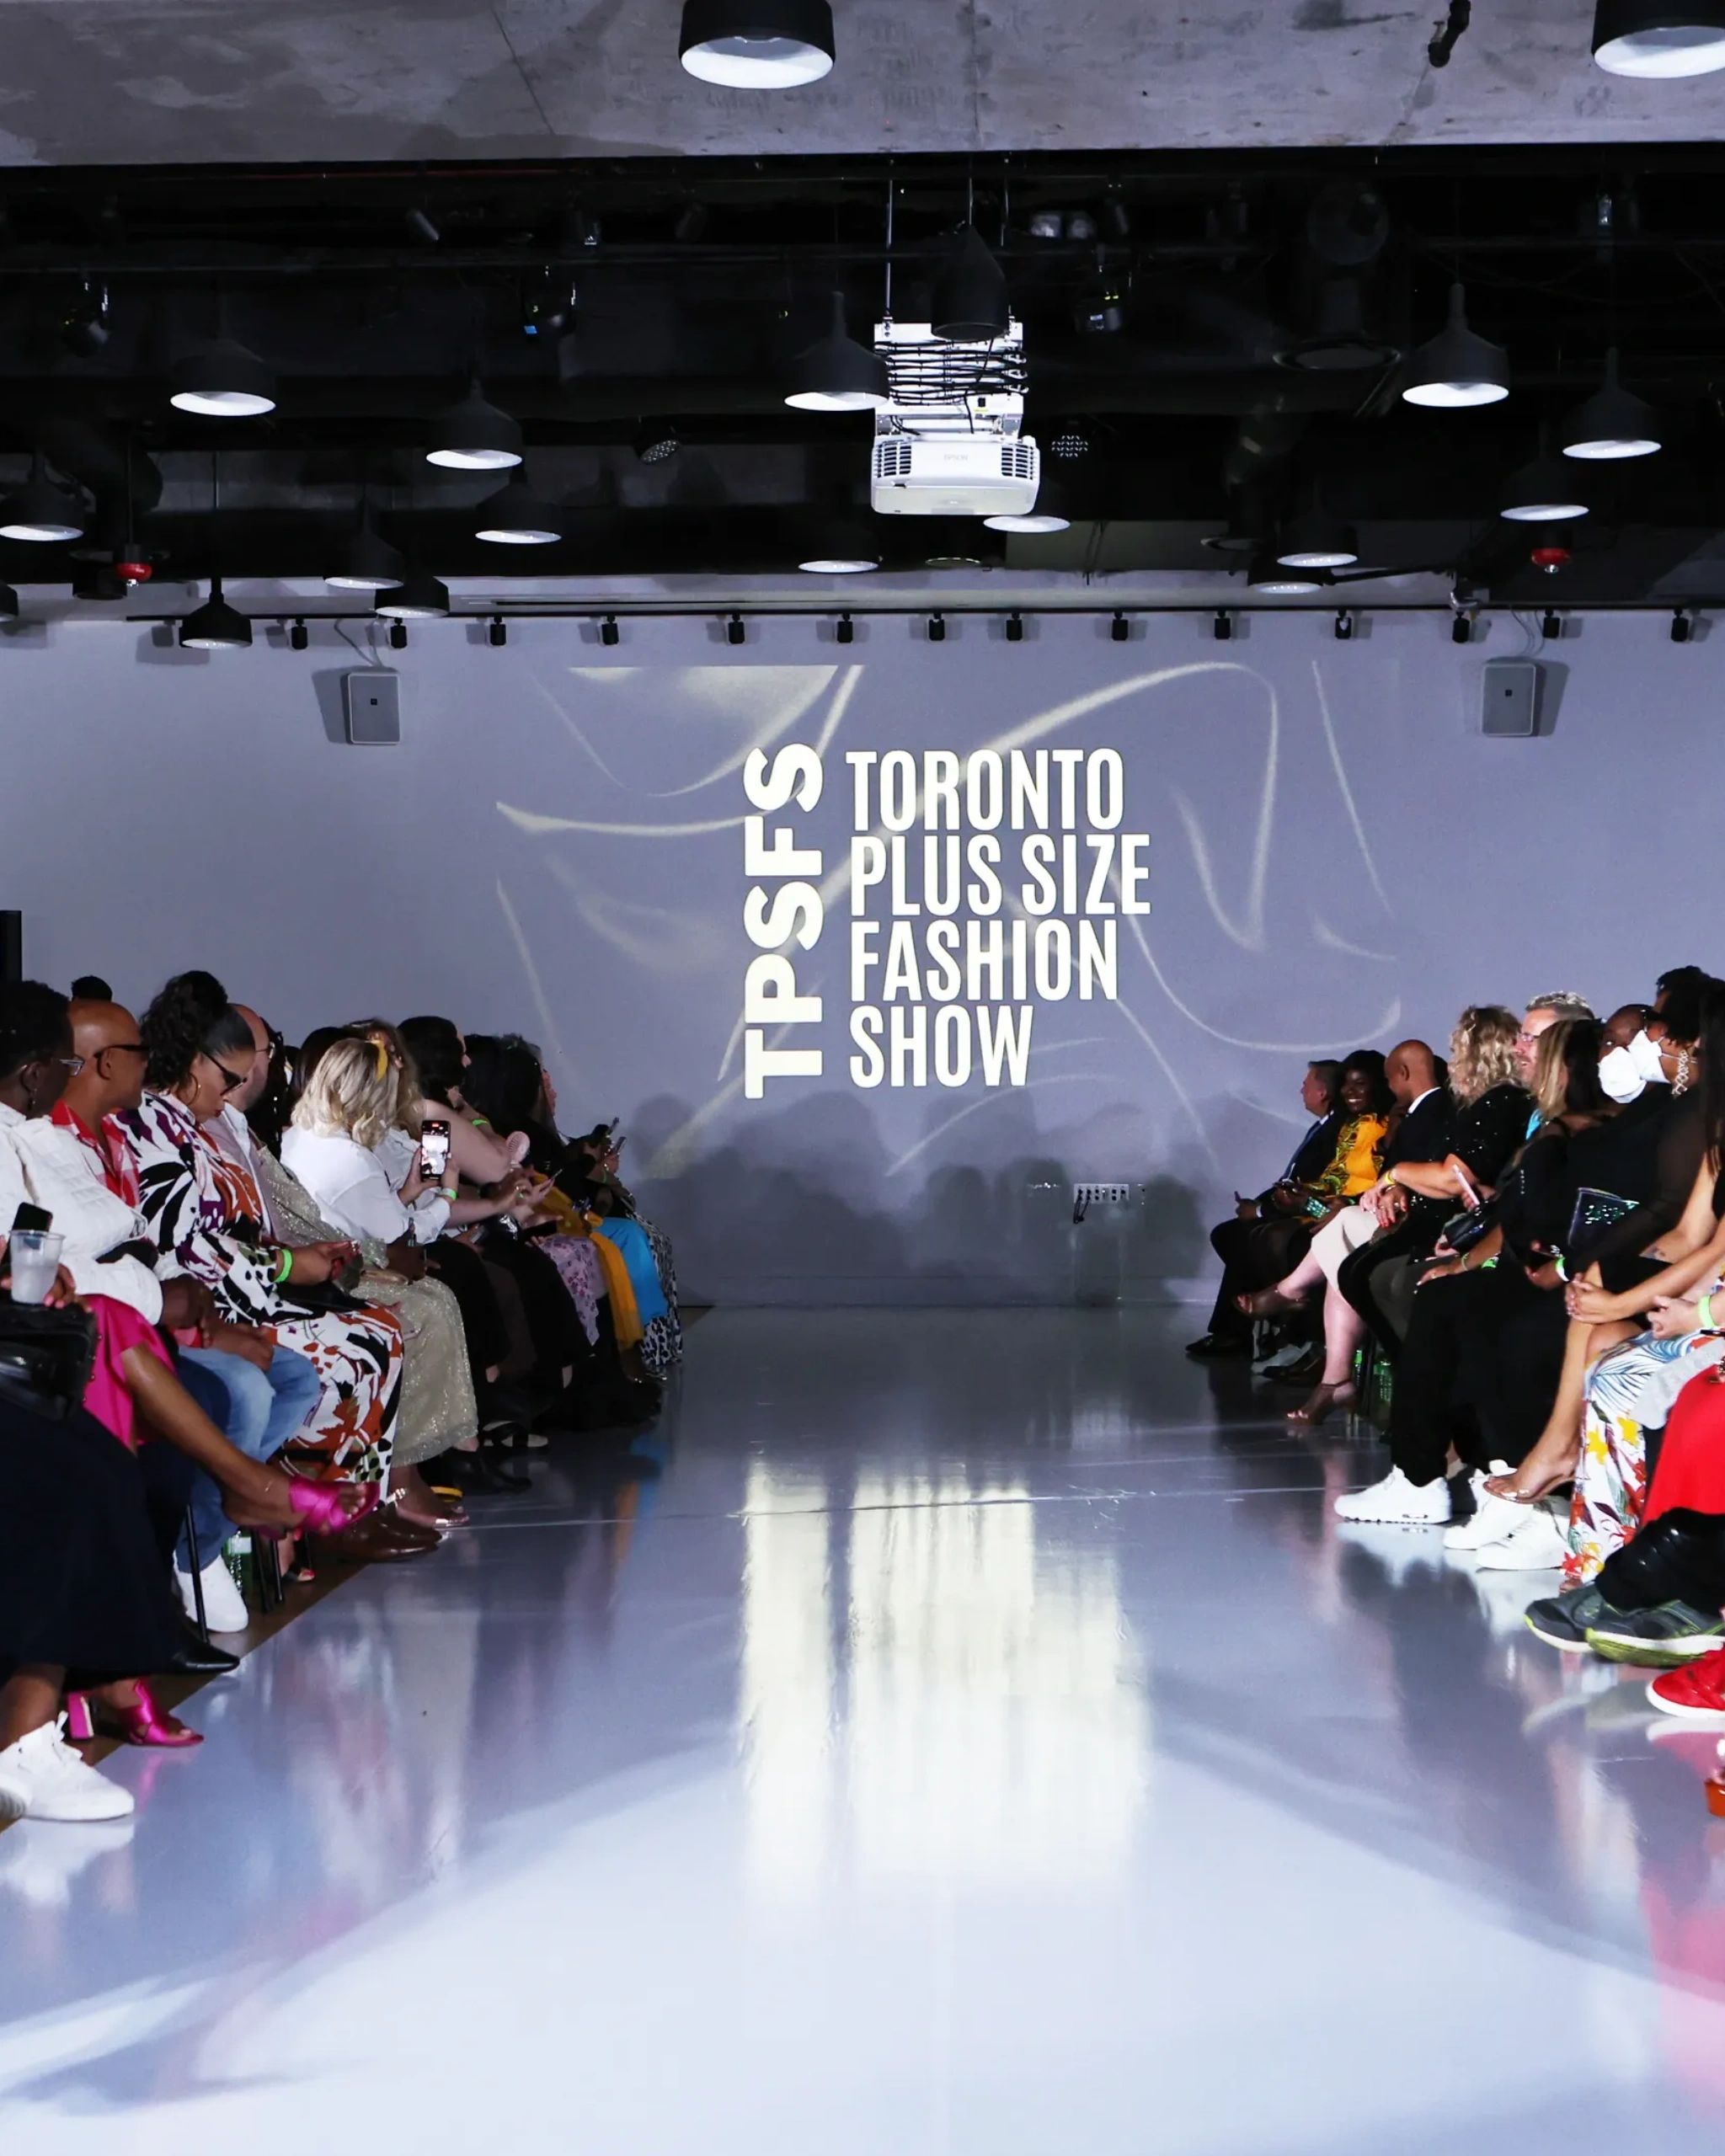 TORONTO PLUS SIZE FASHION SHOW - NOW Toronto